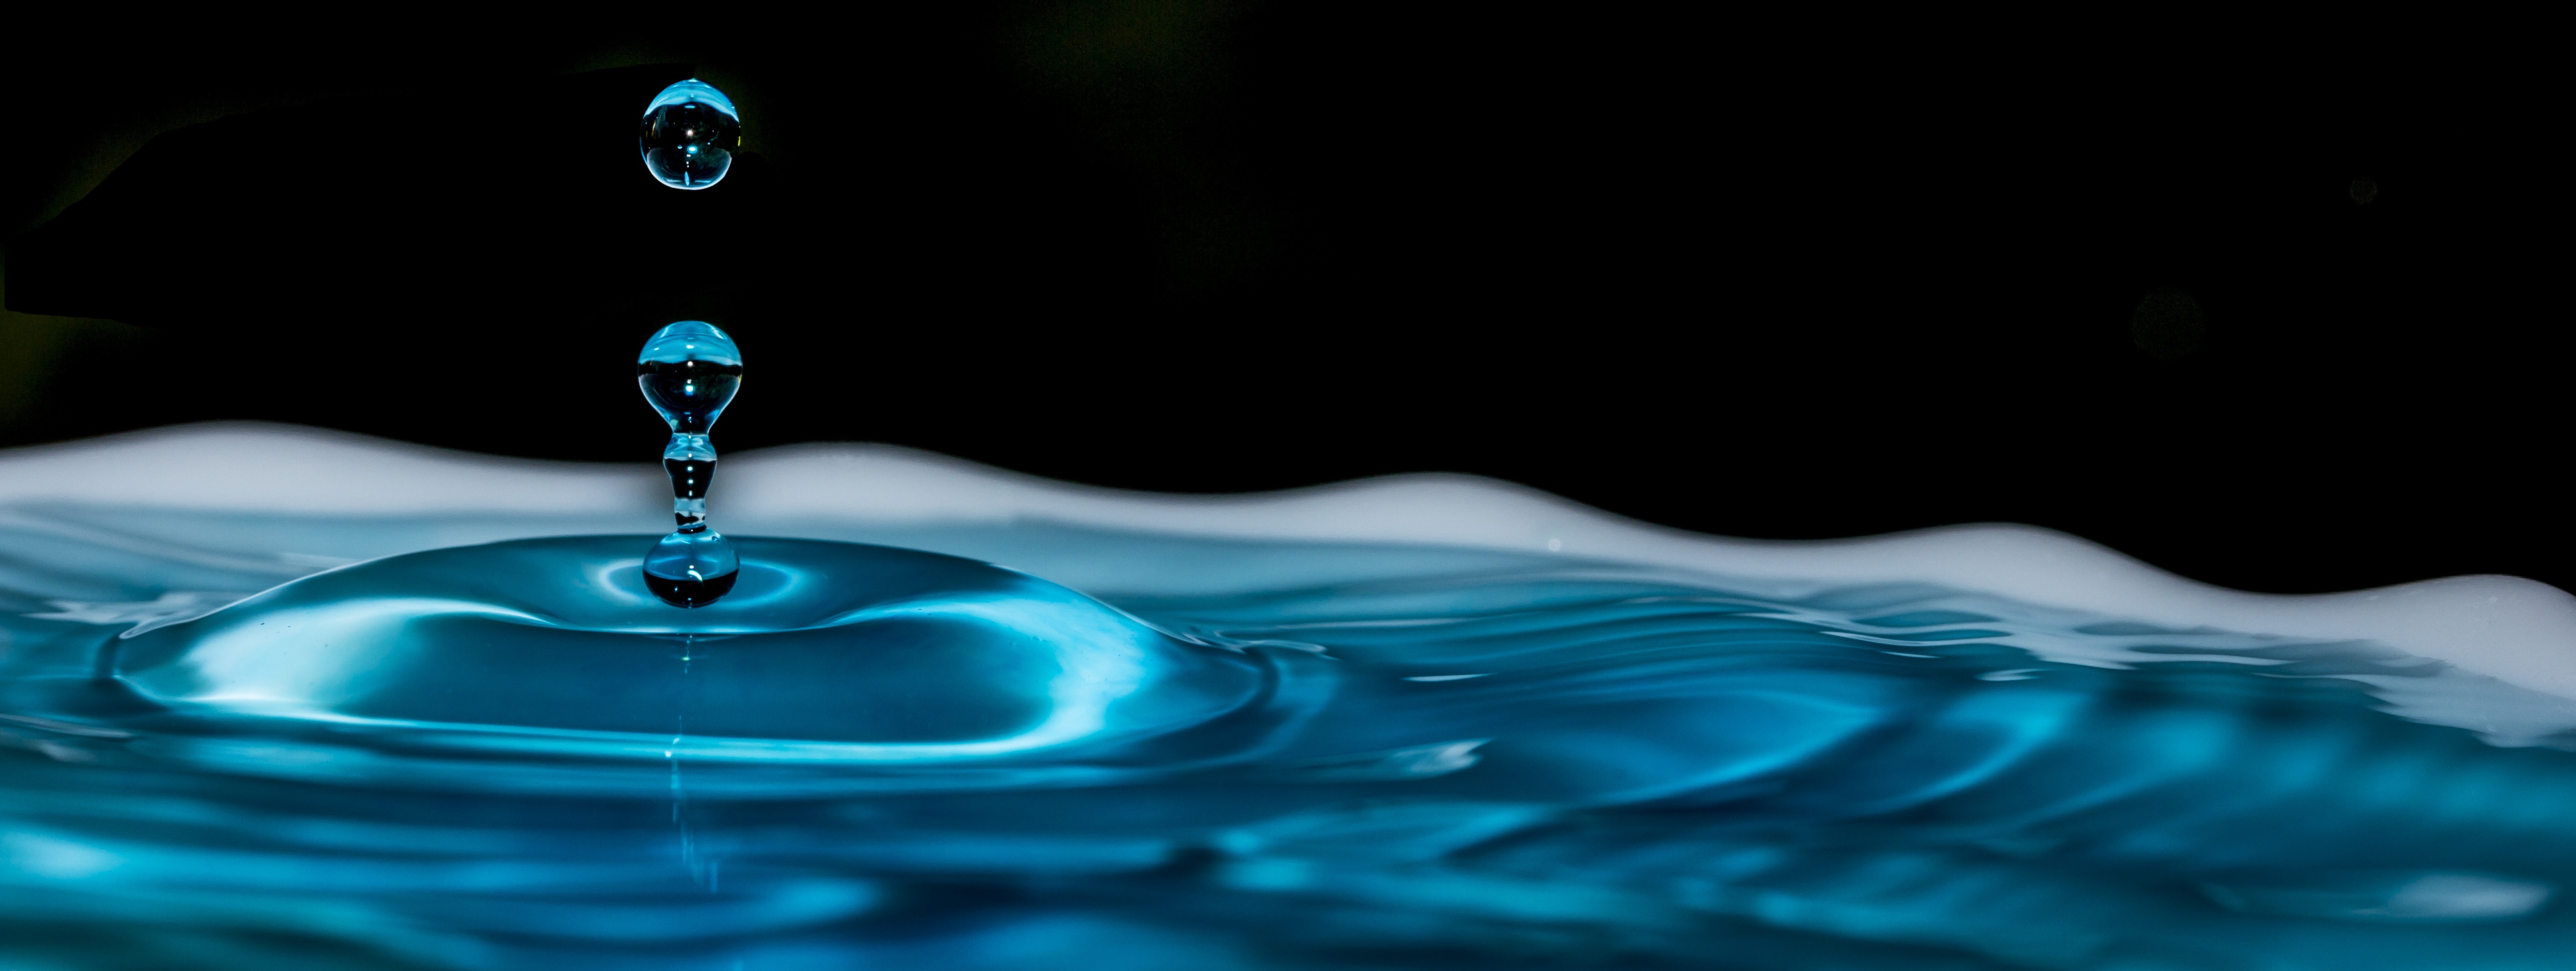 免费照片一滴水落入湛蓝的水中